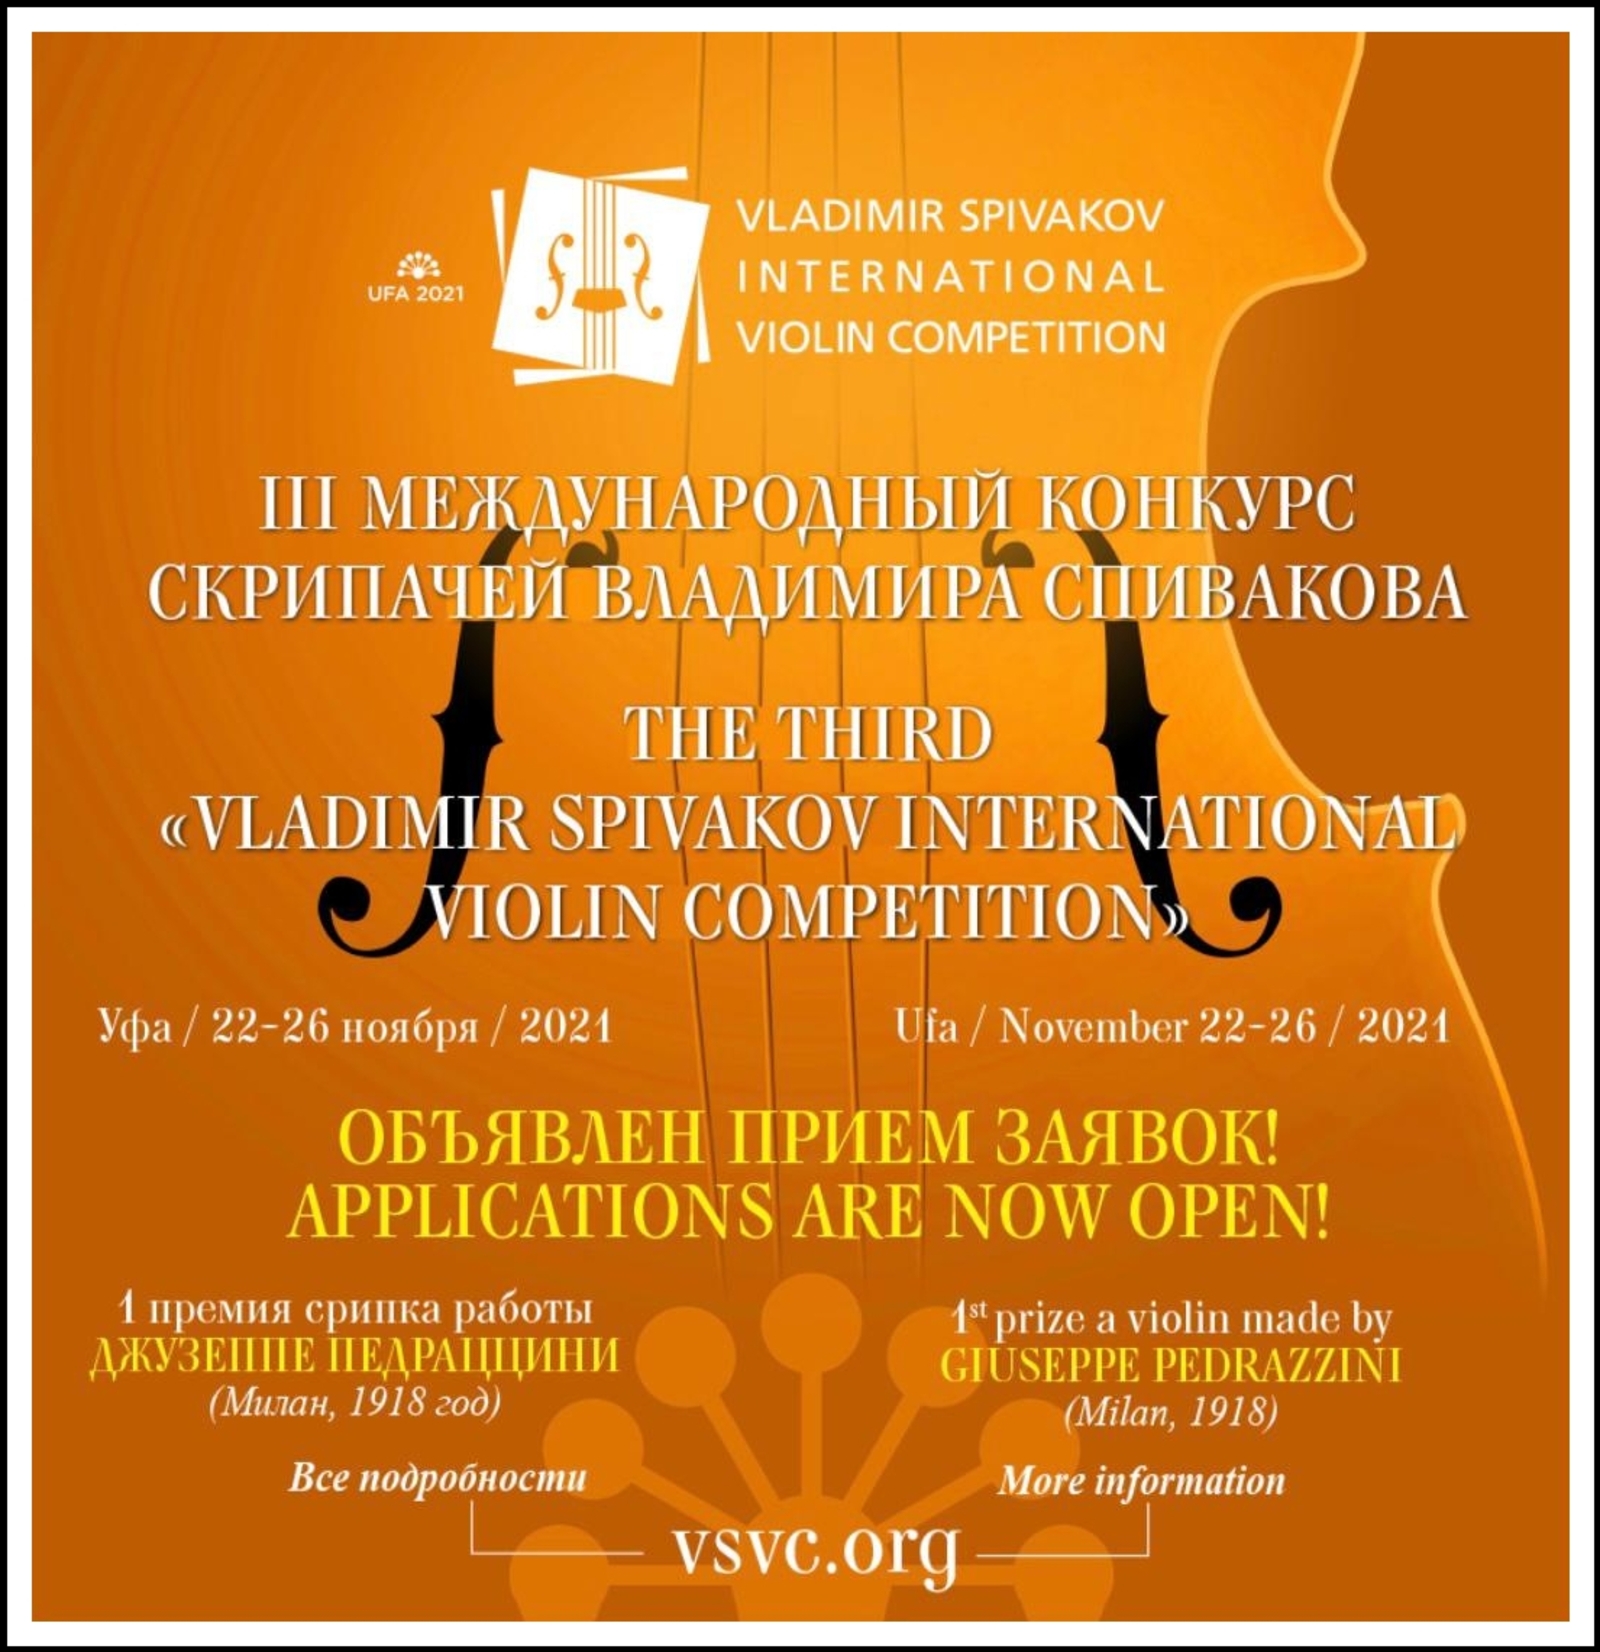 III Международный конкурс скрипачей Владимира Спивакова состоится в Уфе в этом году: утверждены новые сроки проведения